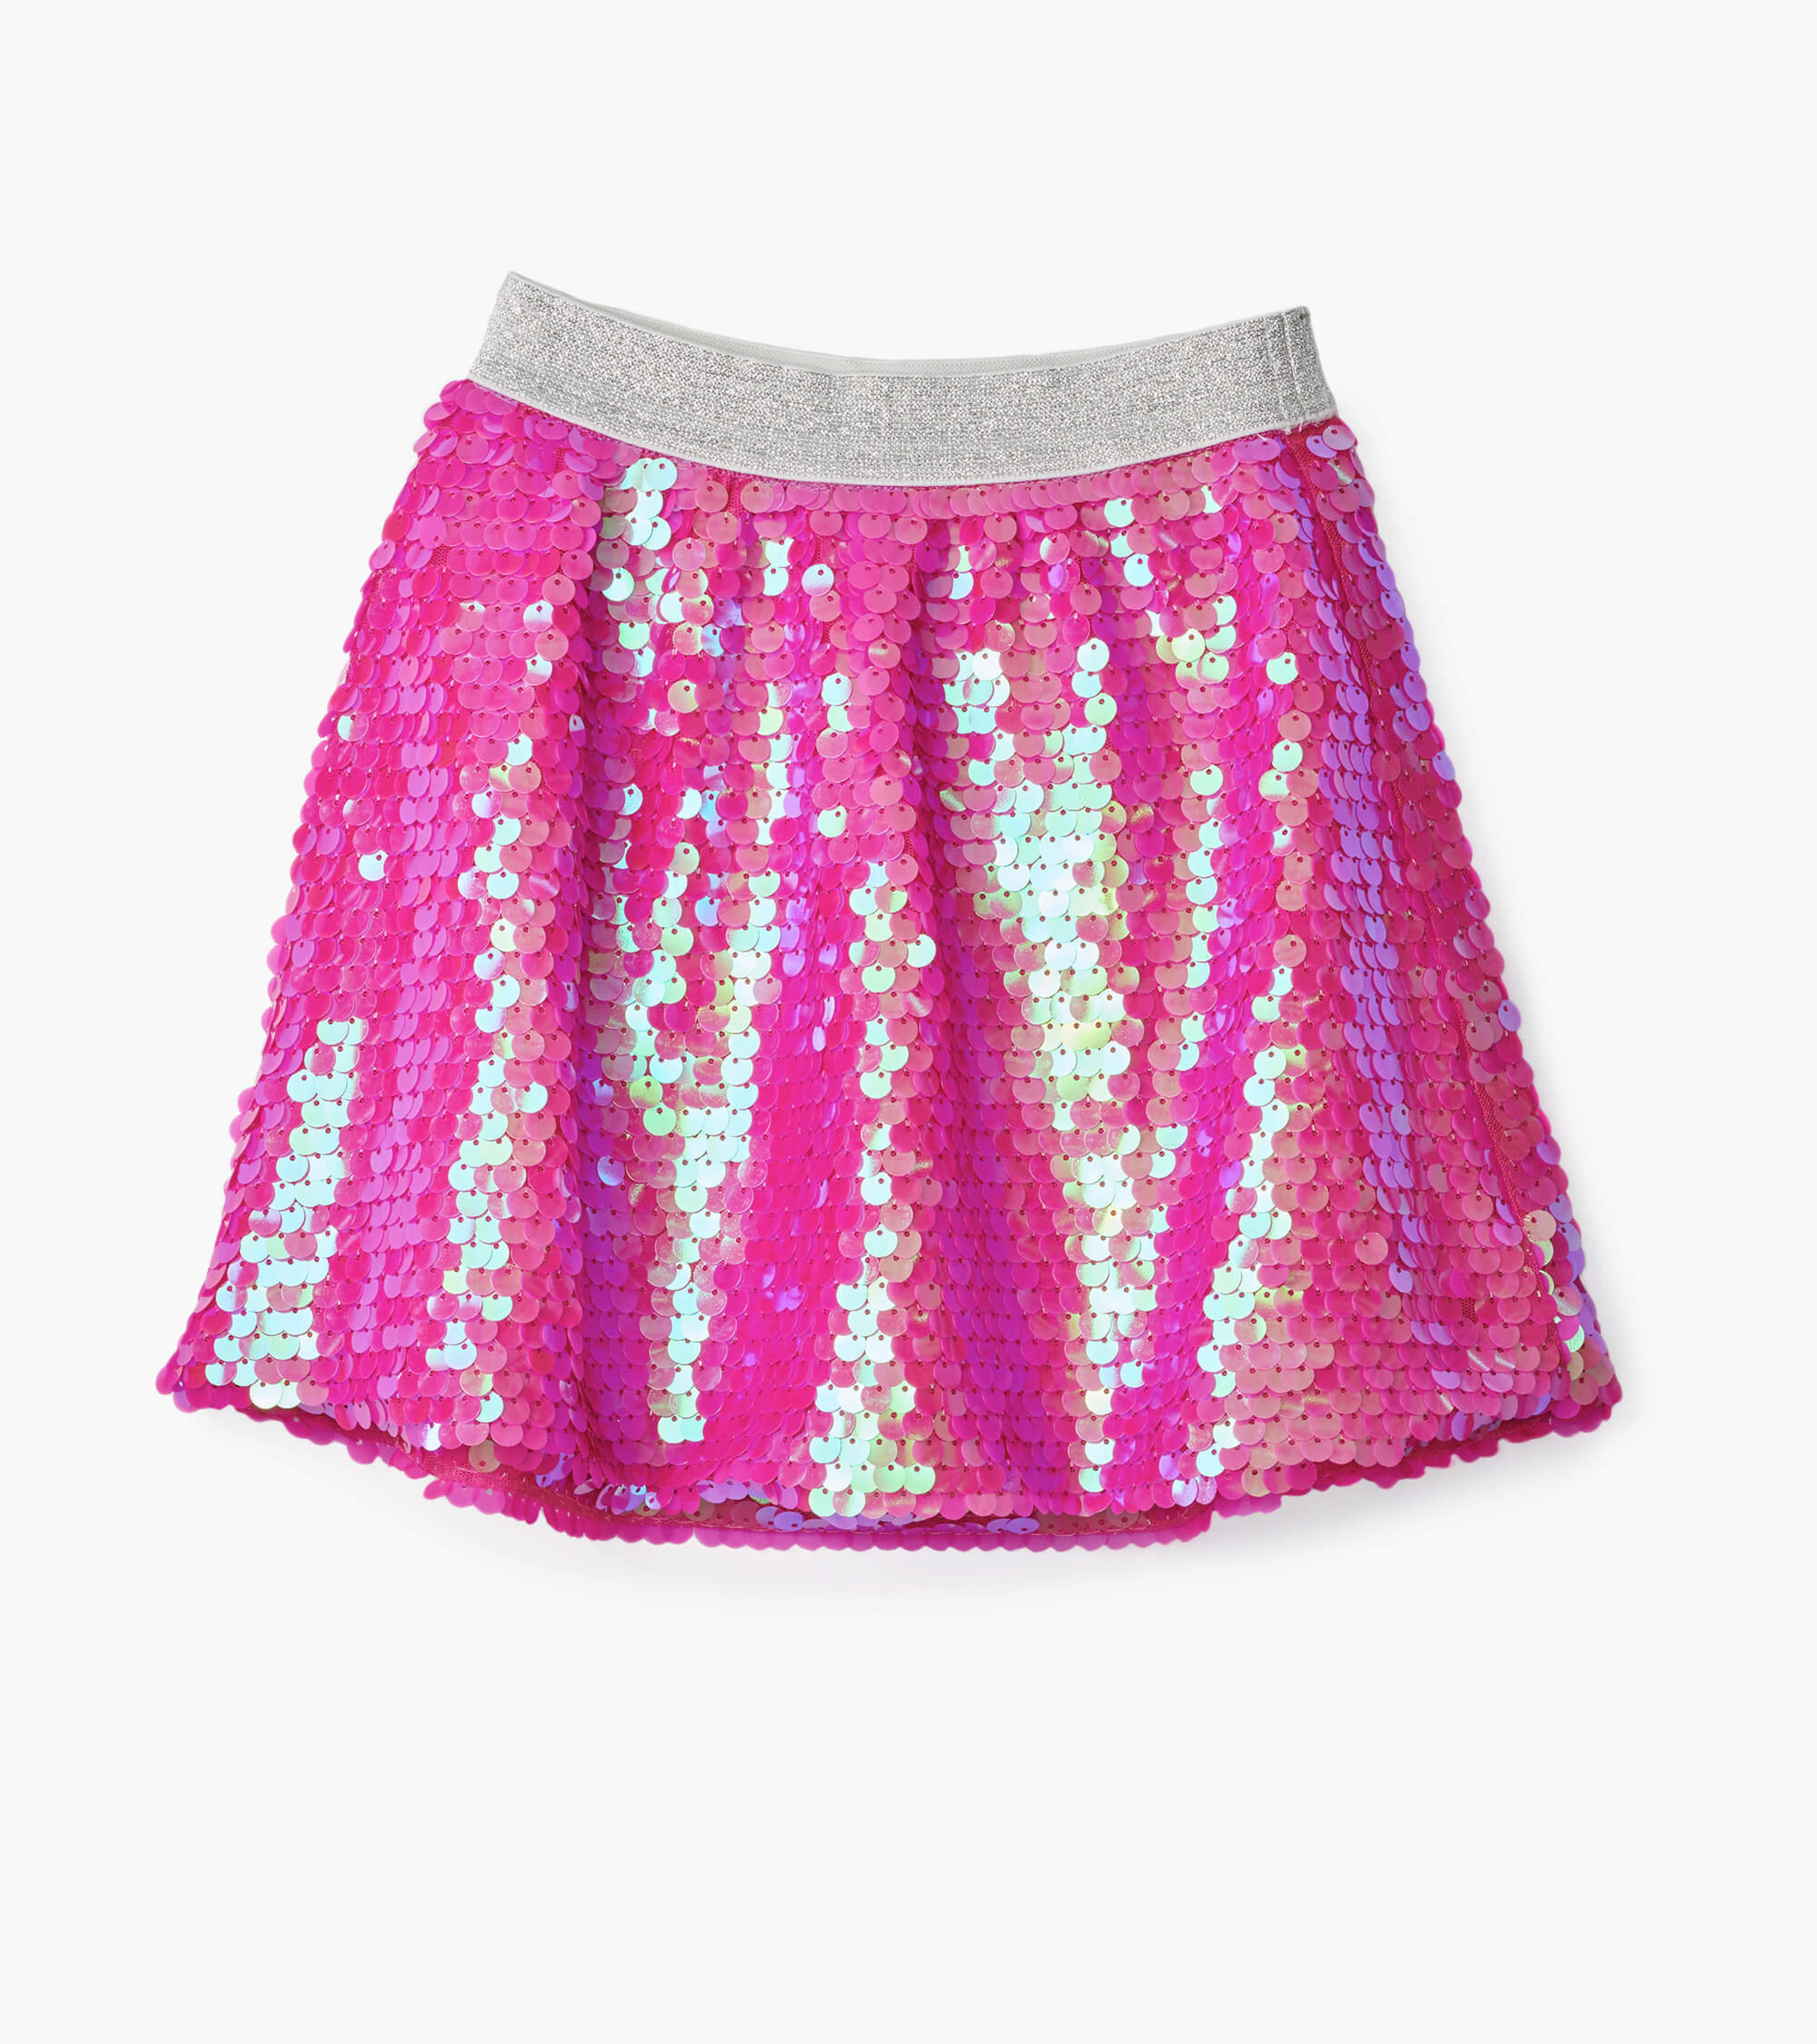 Comorama Fitness sandsynlighed Pink Shimmer Sequin Skirt - Hatley US